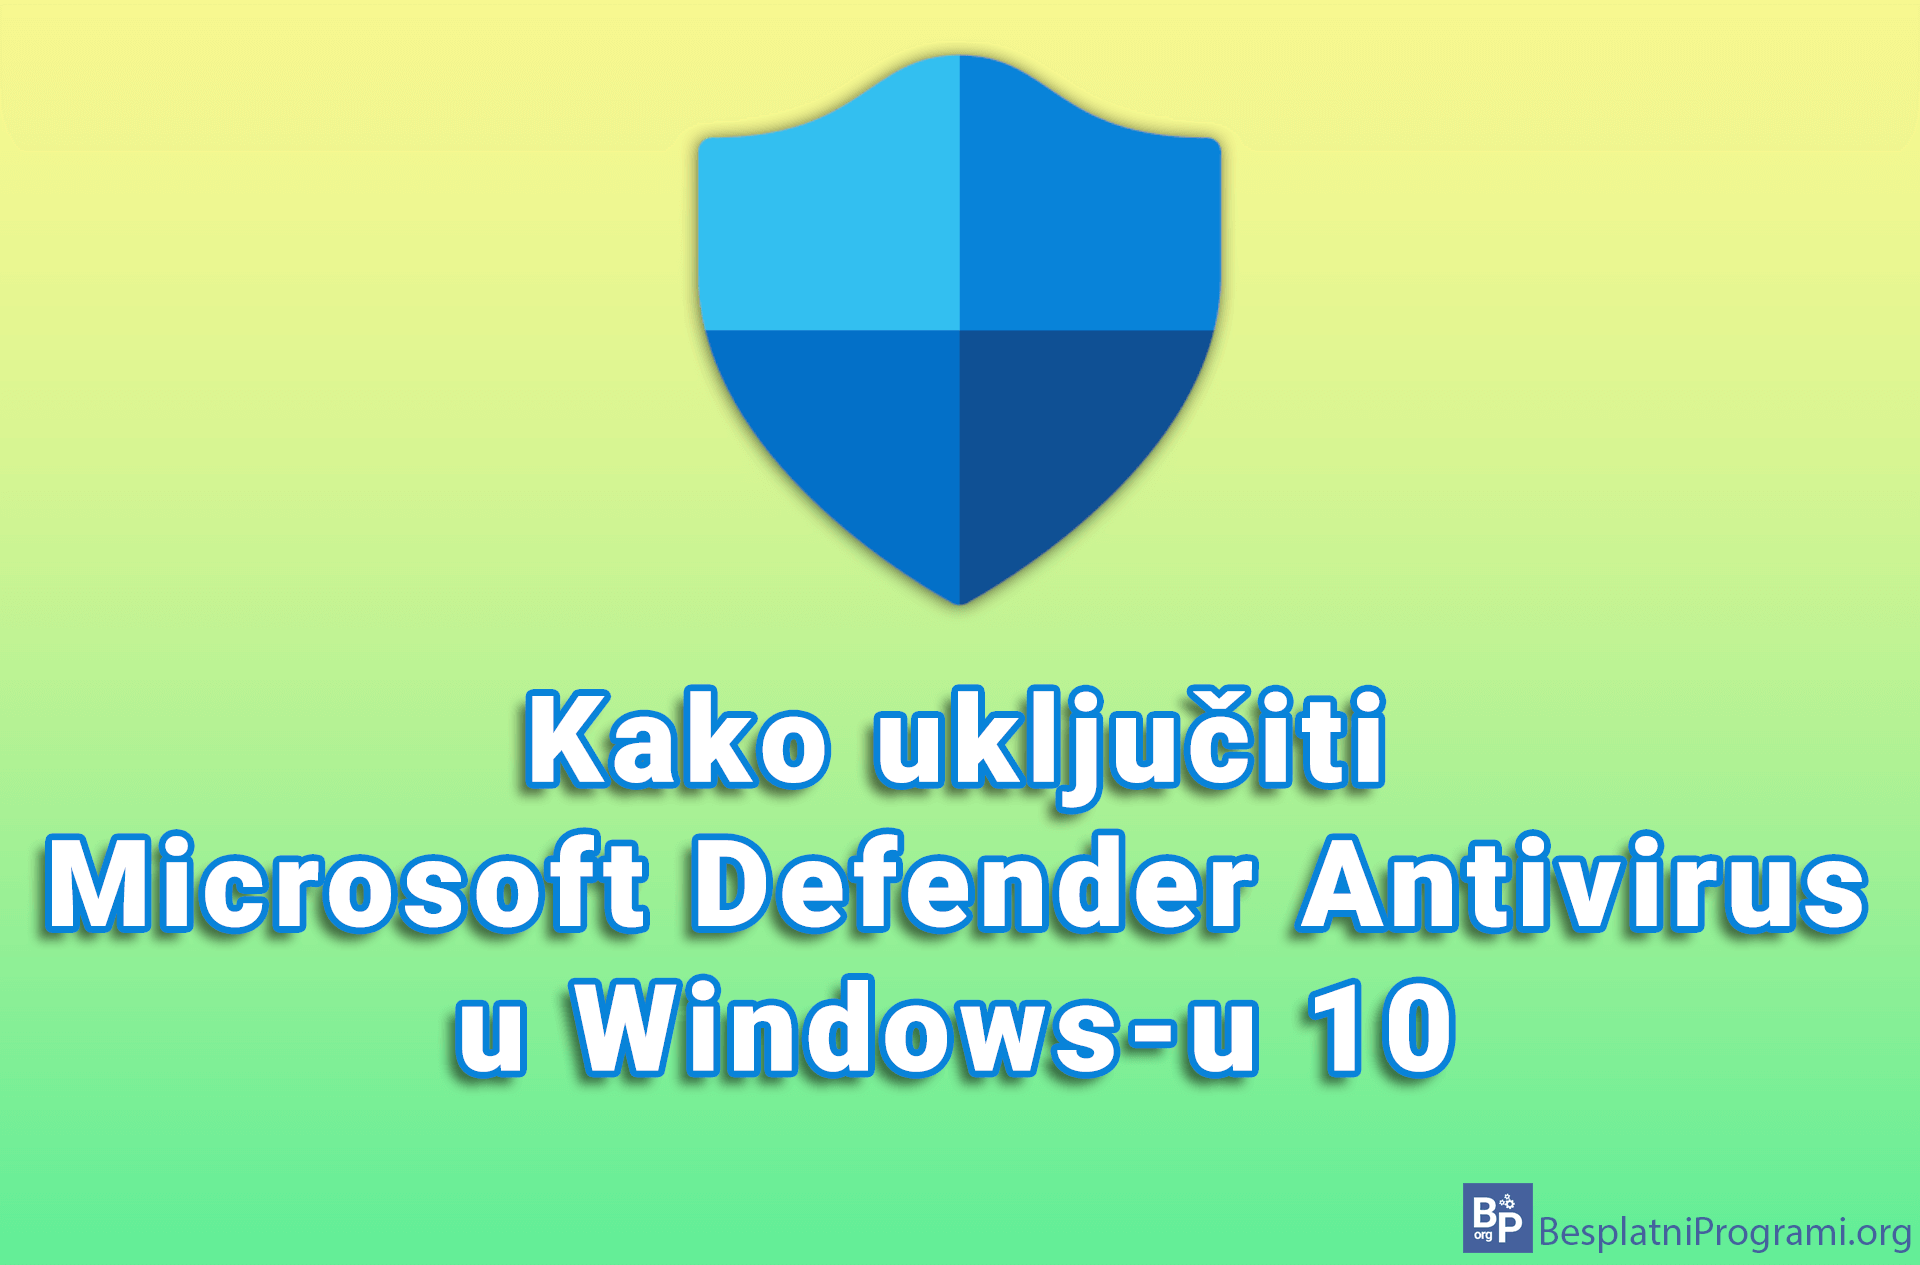 Kako uključiti Microsoft Defender Antivirus u Windows-u 10